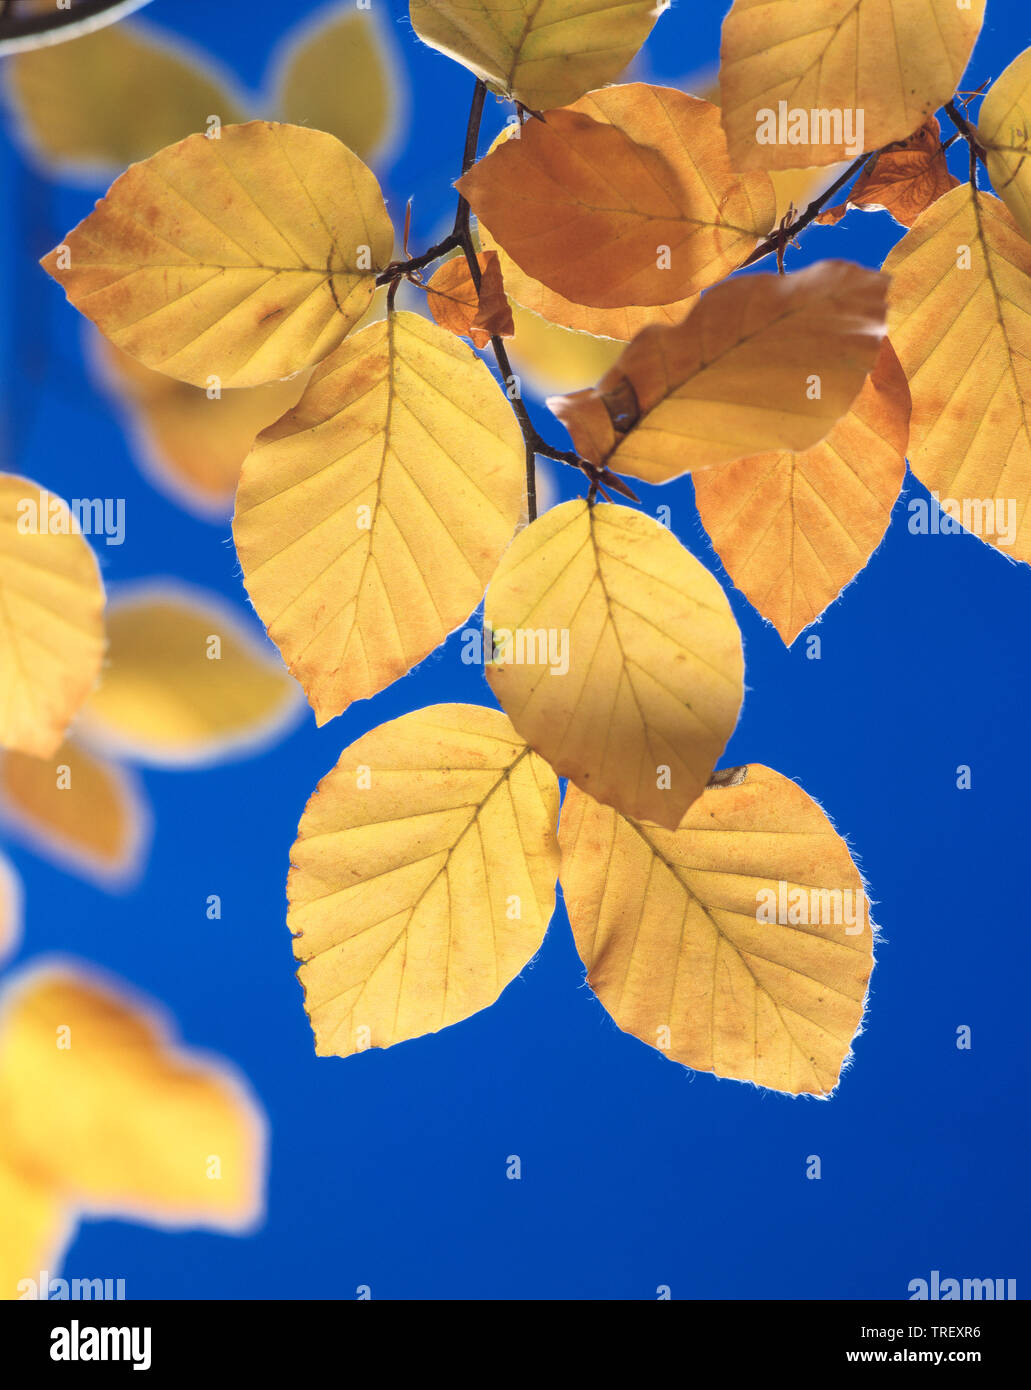 Hêtre européen, le hêtre commun (Fagus sylvatica). Feuilles à l'automne couleurs de rétroéclairage. Allemagne Banque D'Images